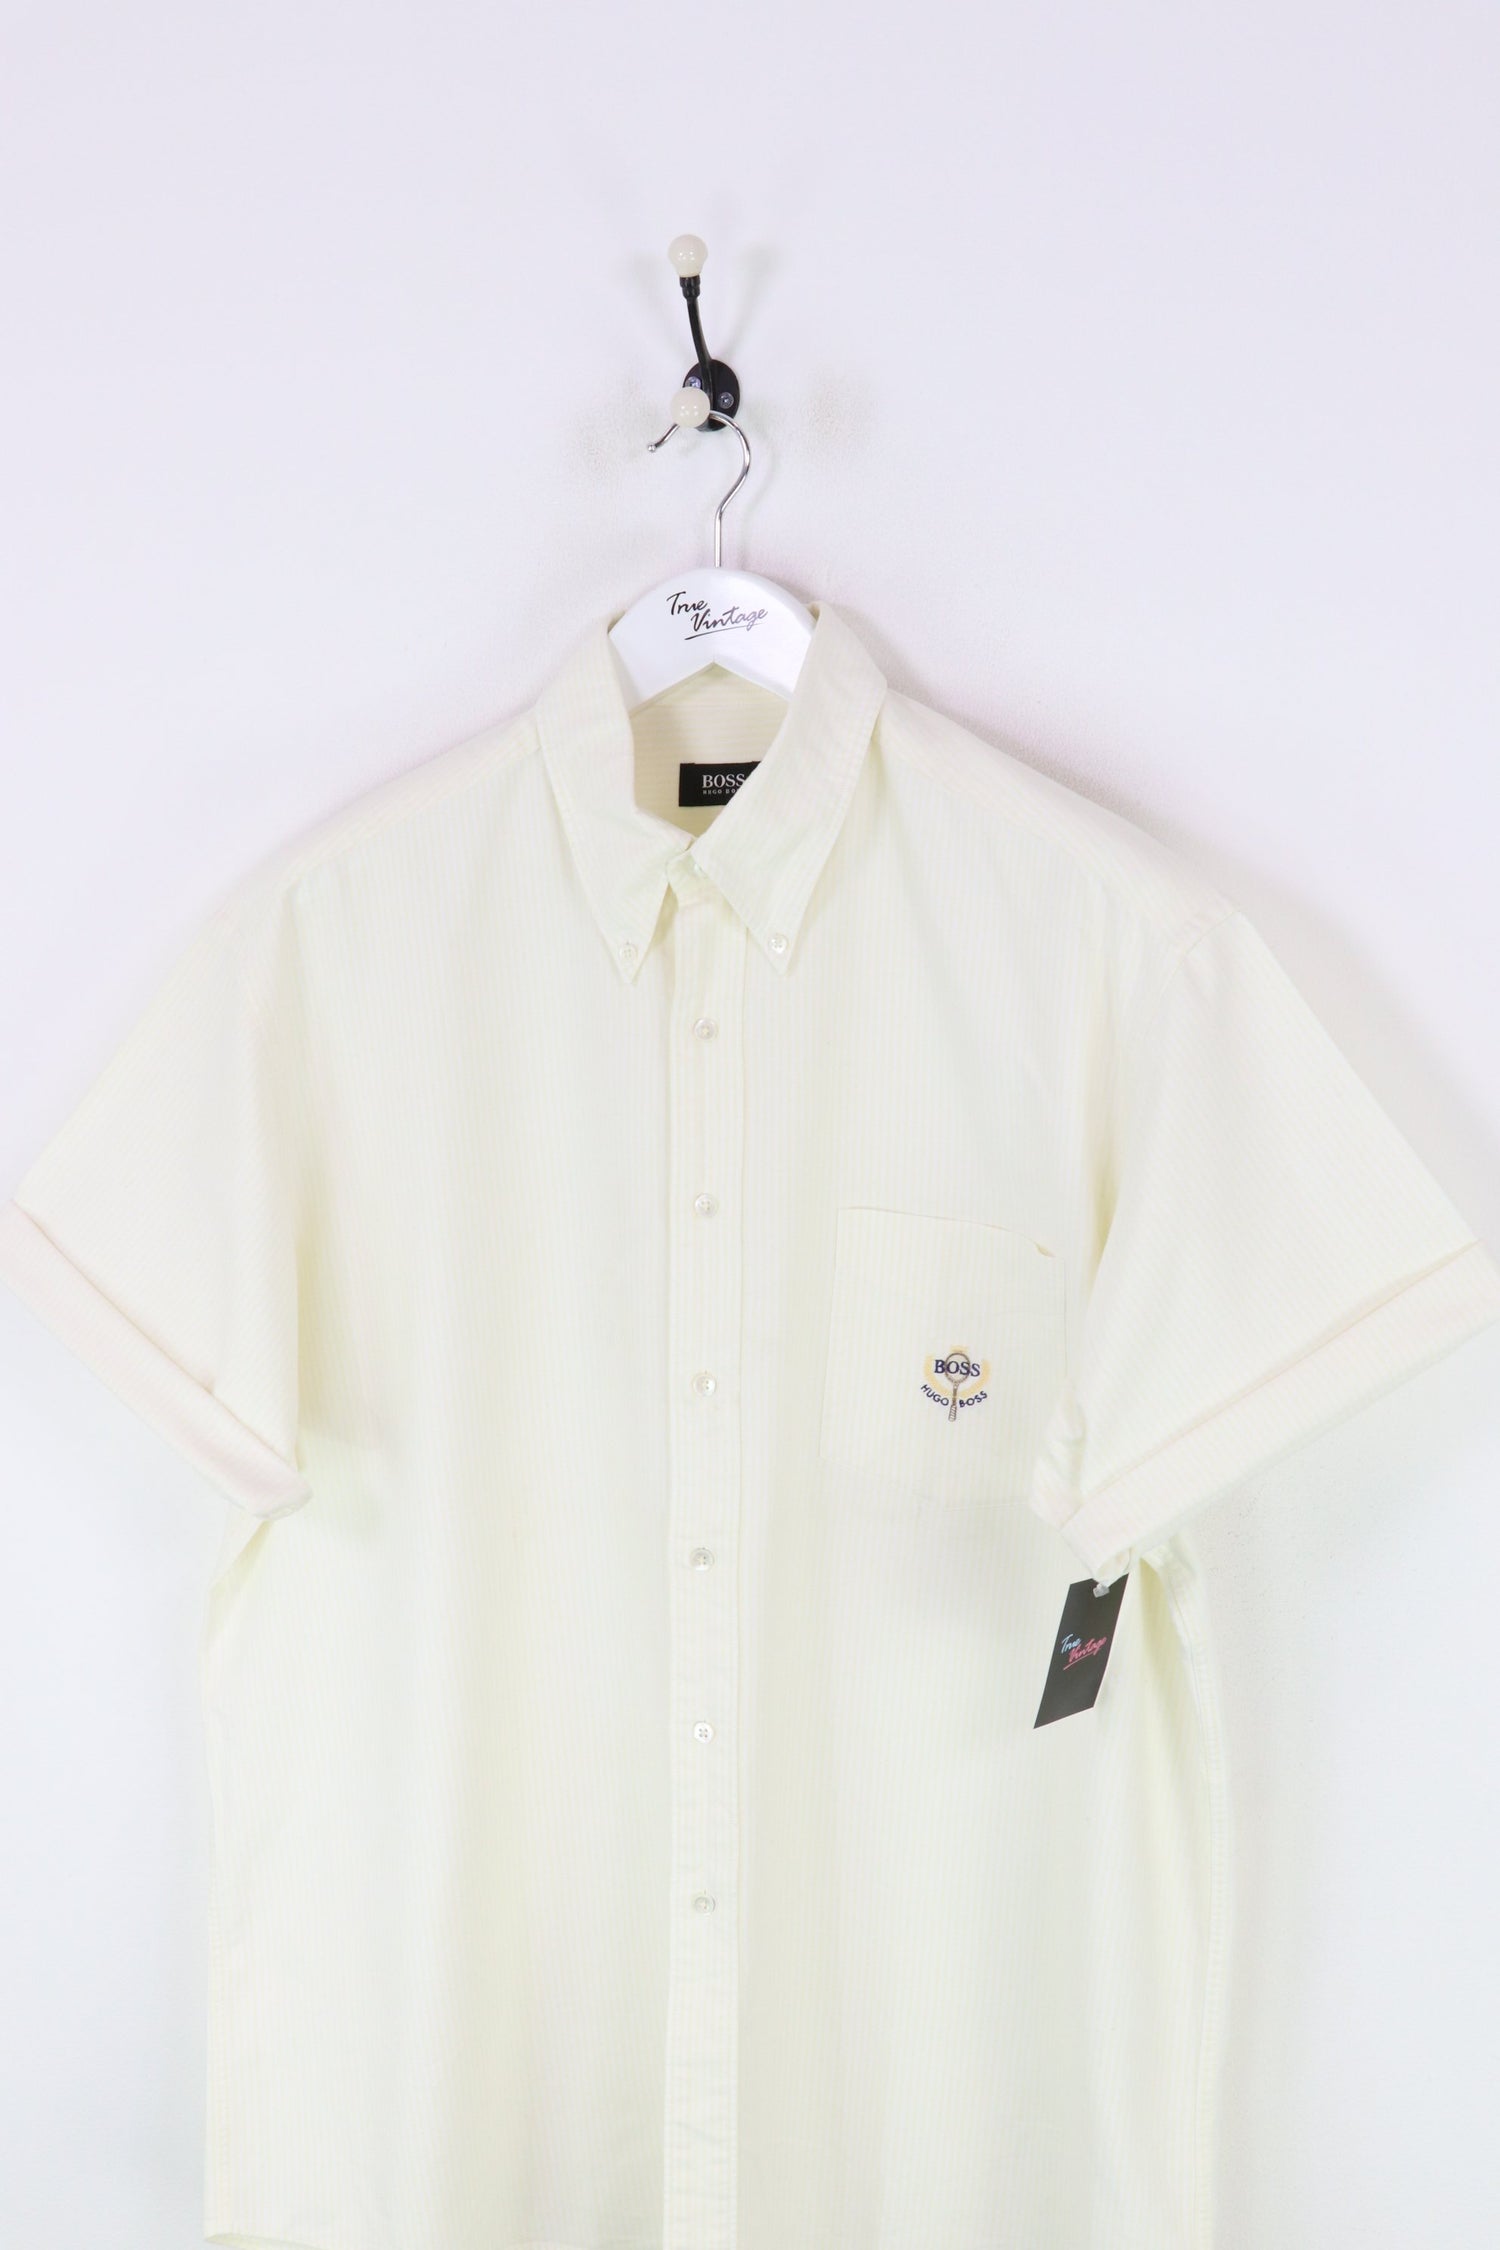 Hugo Boss S/S Shirt White/Yellow XXL